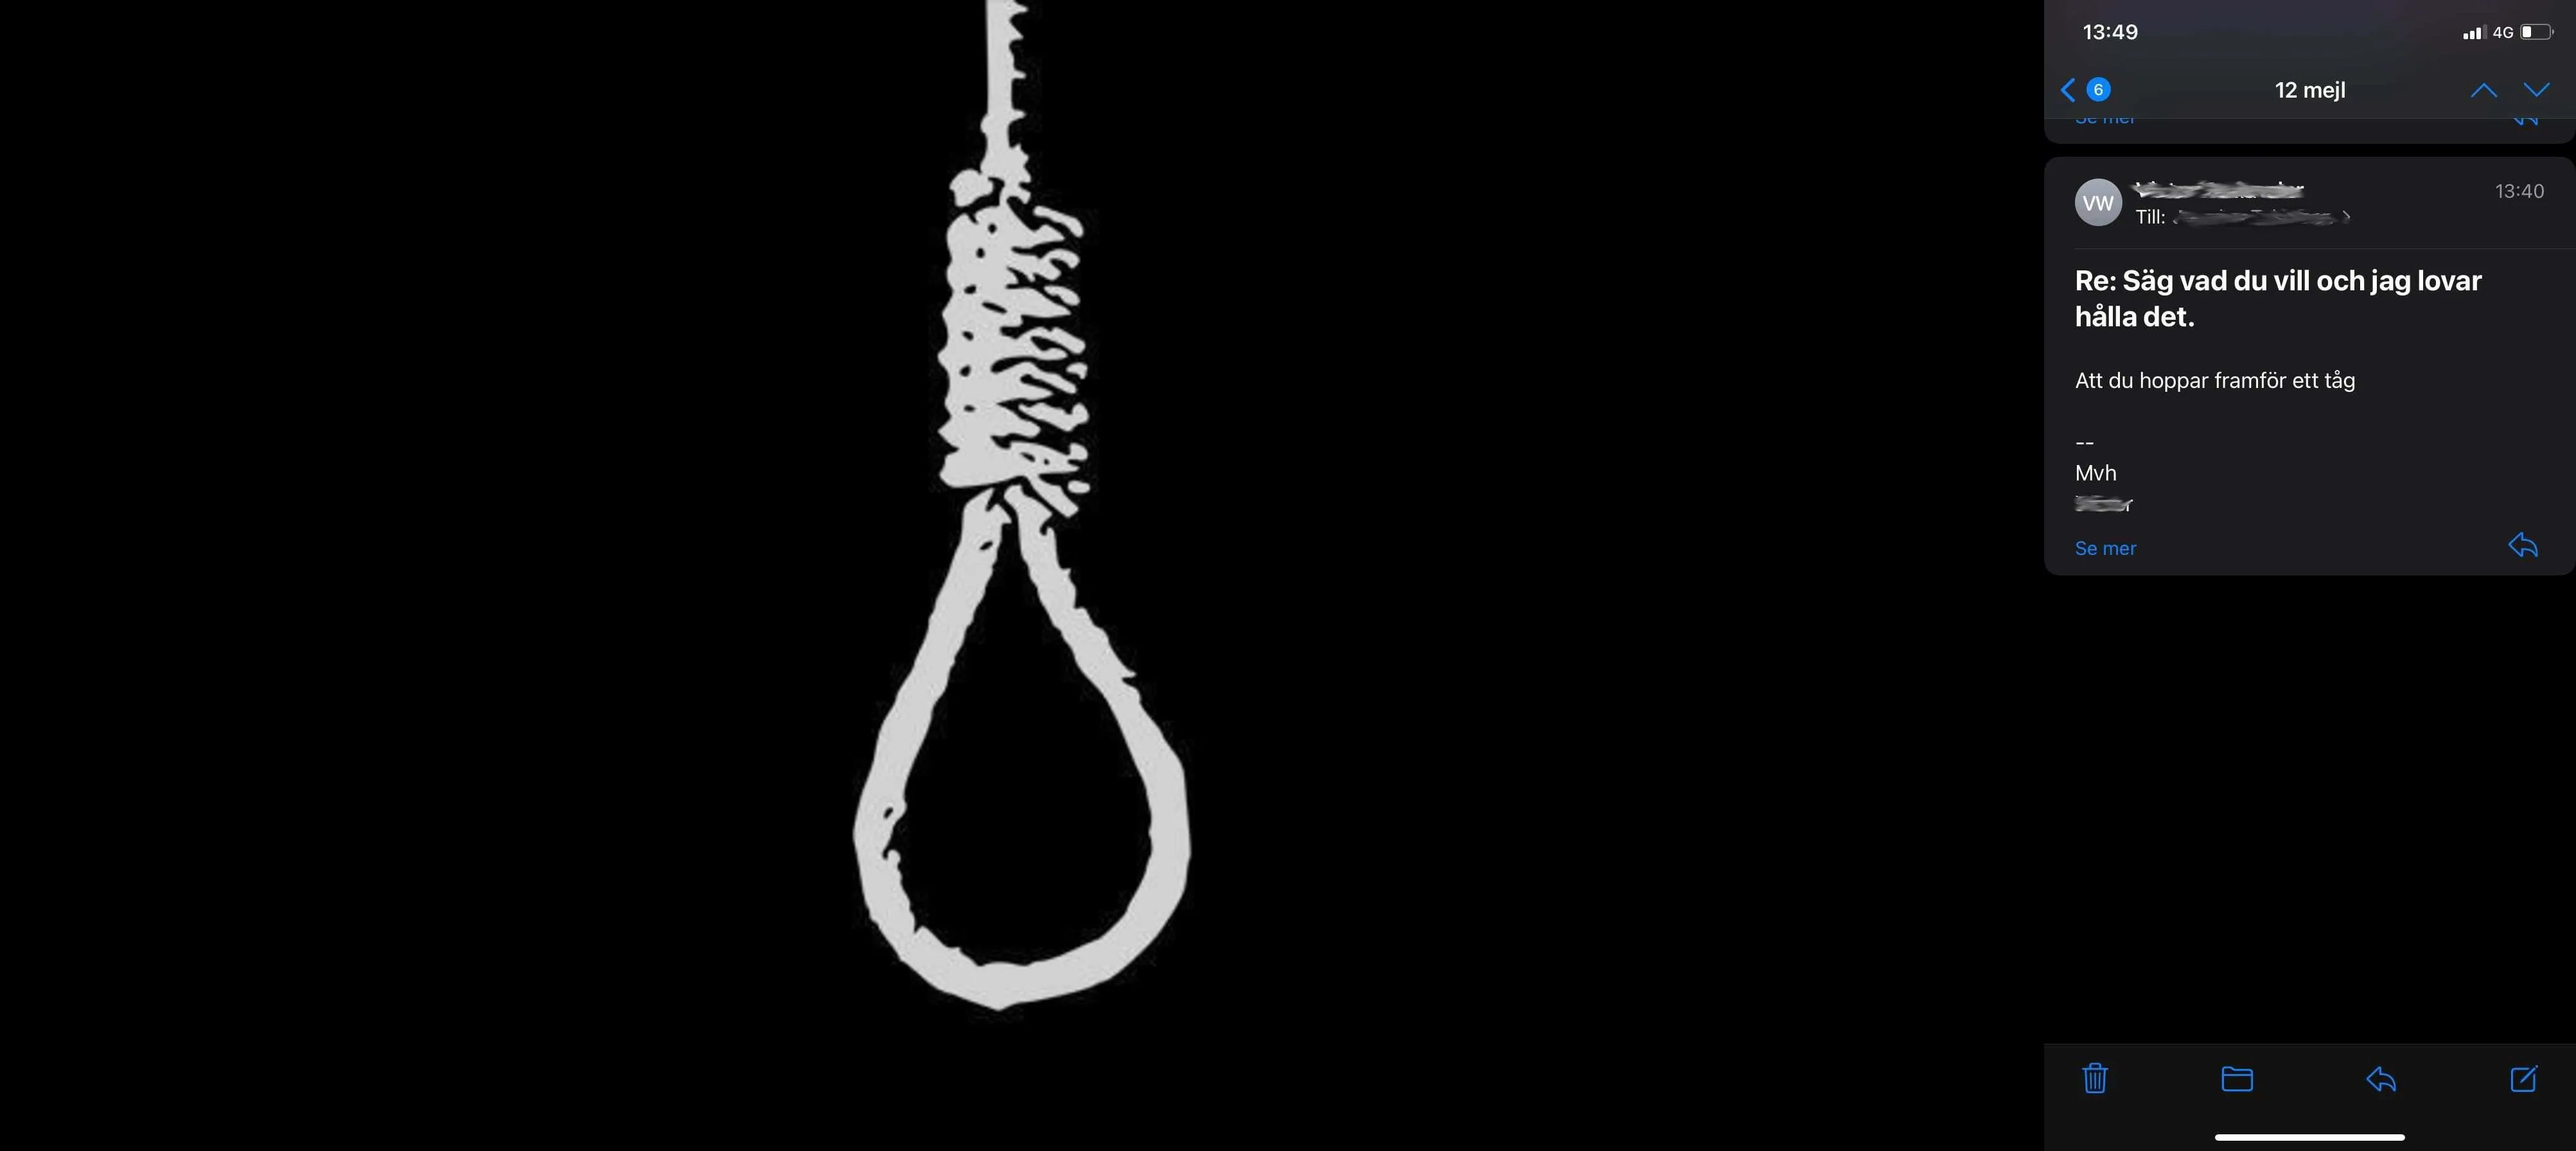 Hovrätten: 35-åring döms för uppmaning till självmord